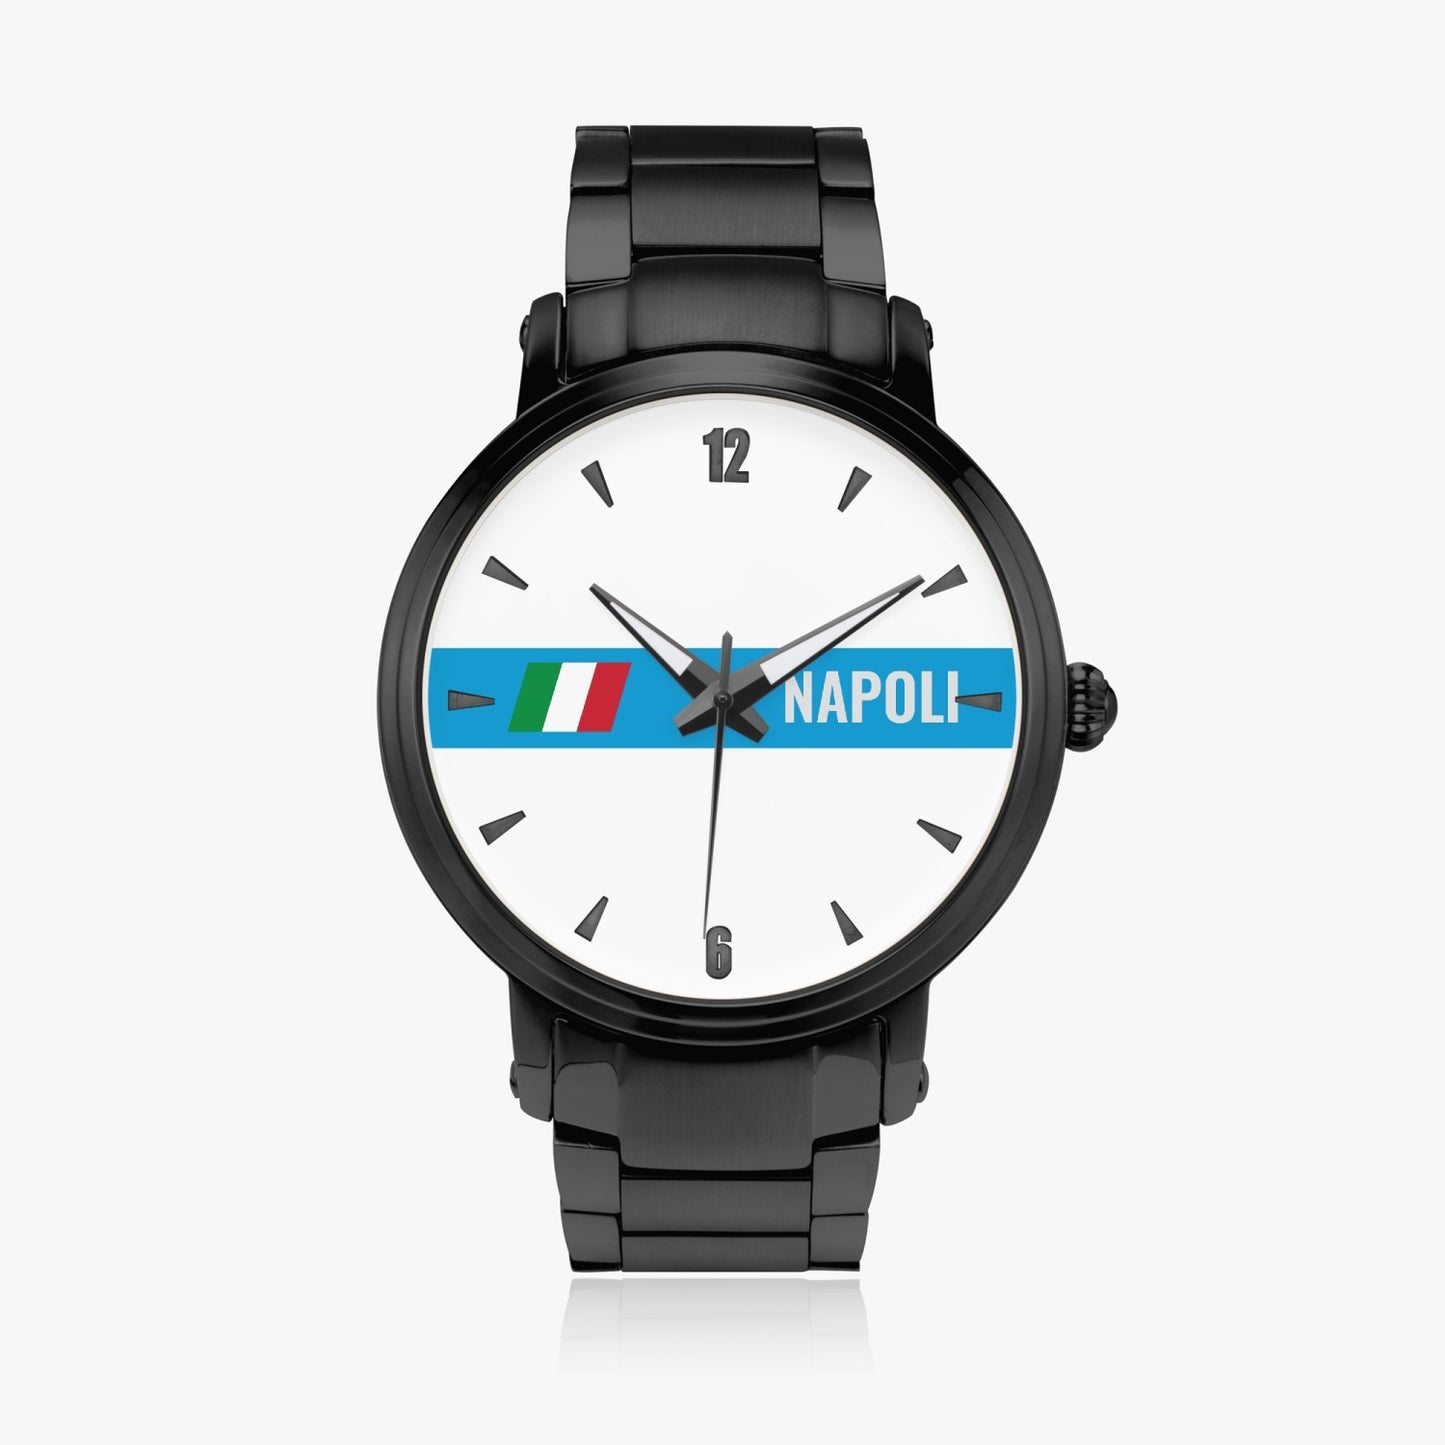 Orologio con movimento automatico Napoli - Acciaio inossidabile di alta qualità